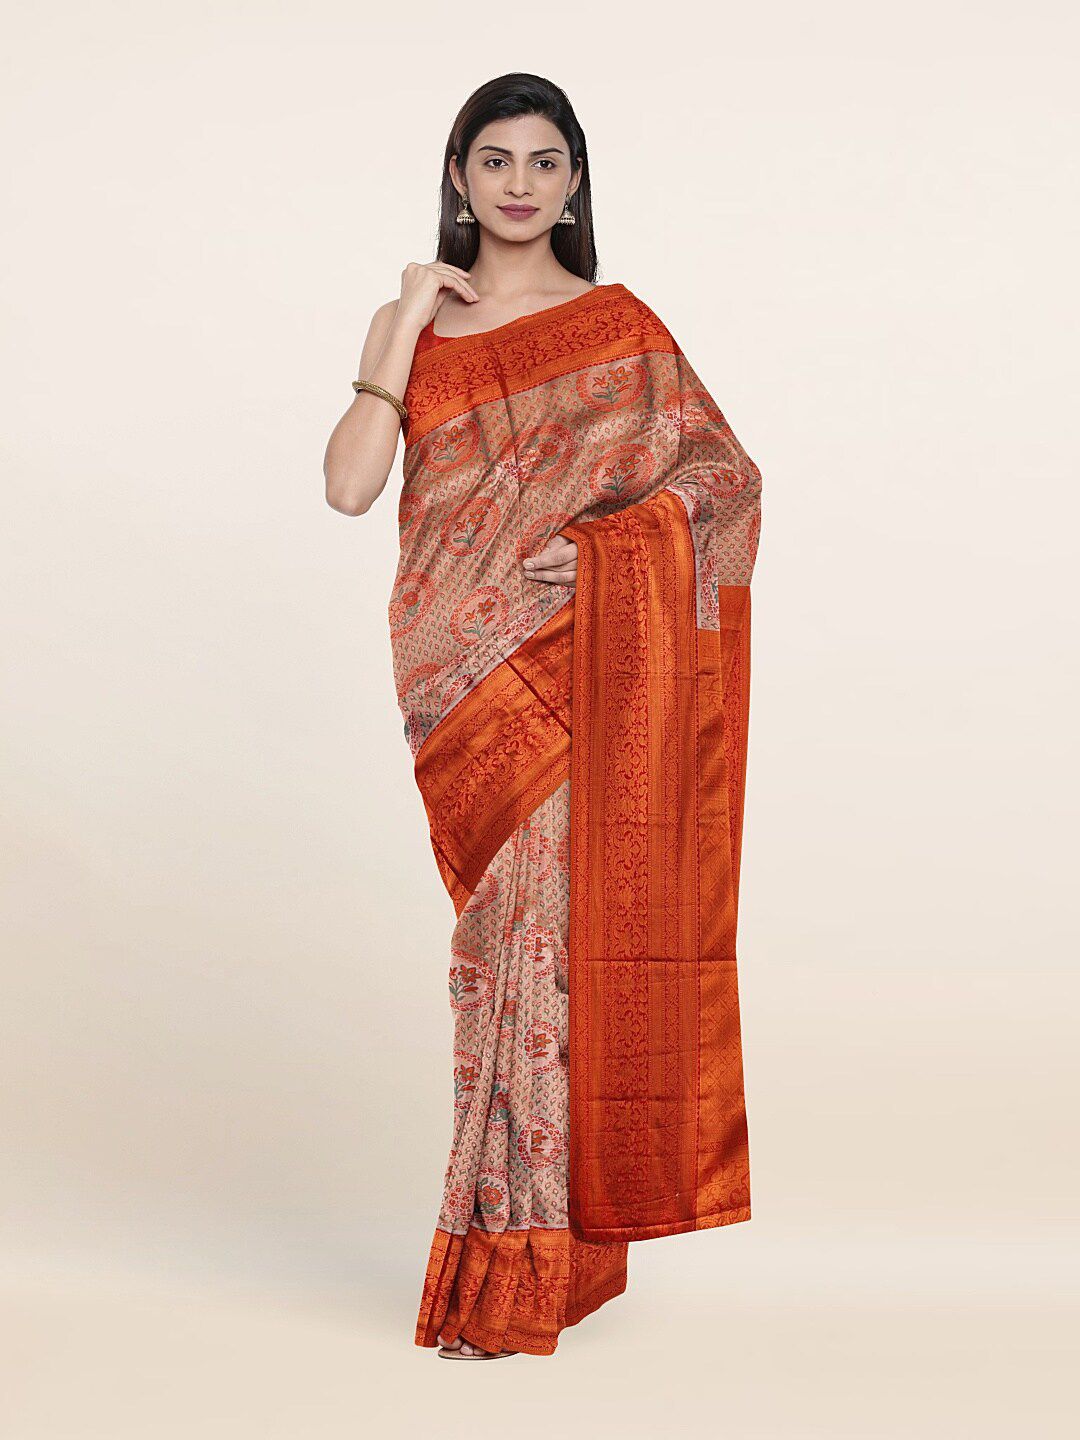 Pothys Woven Design Zari Pure Silk Saree Price in India